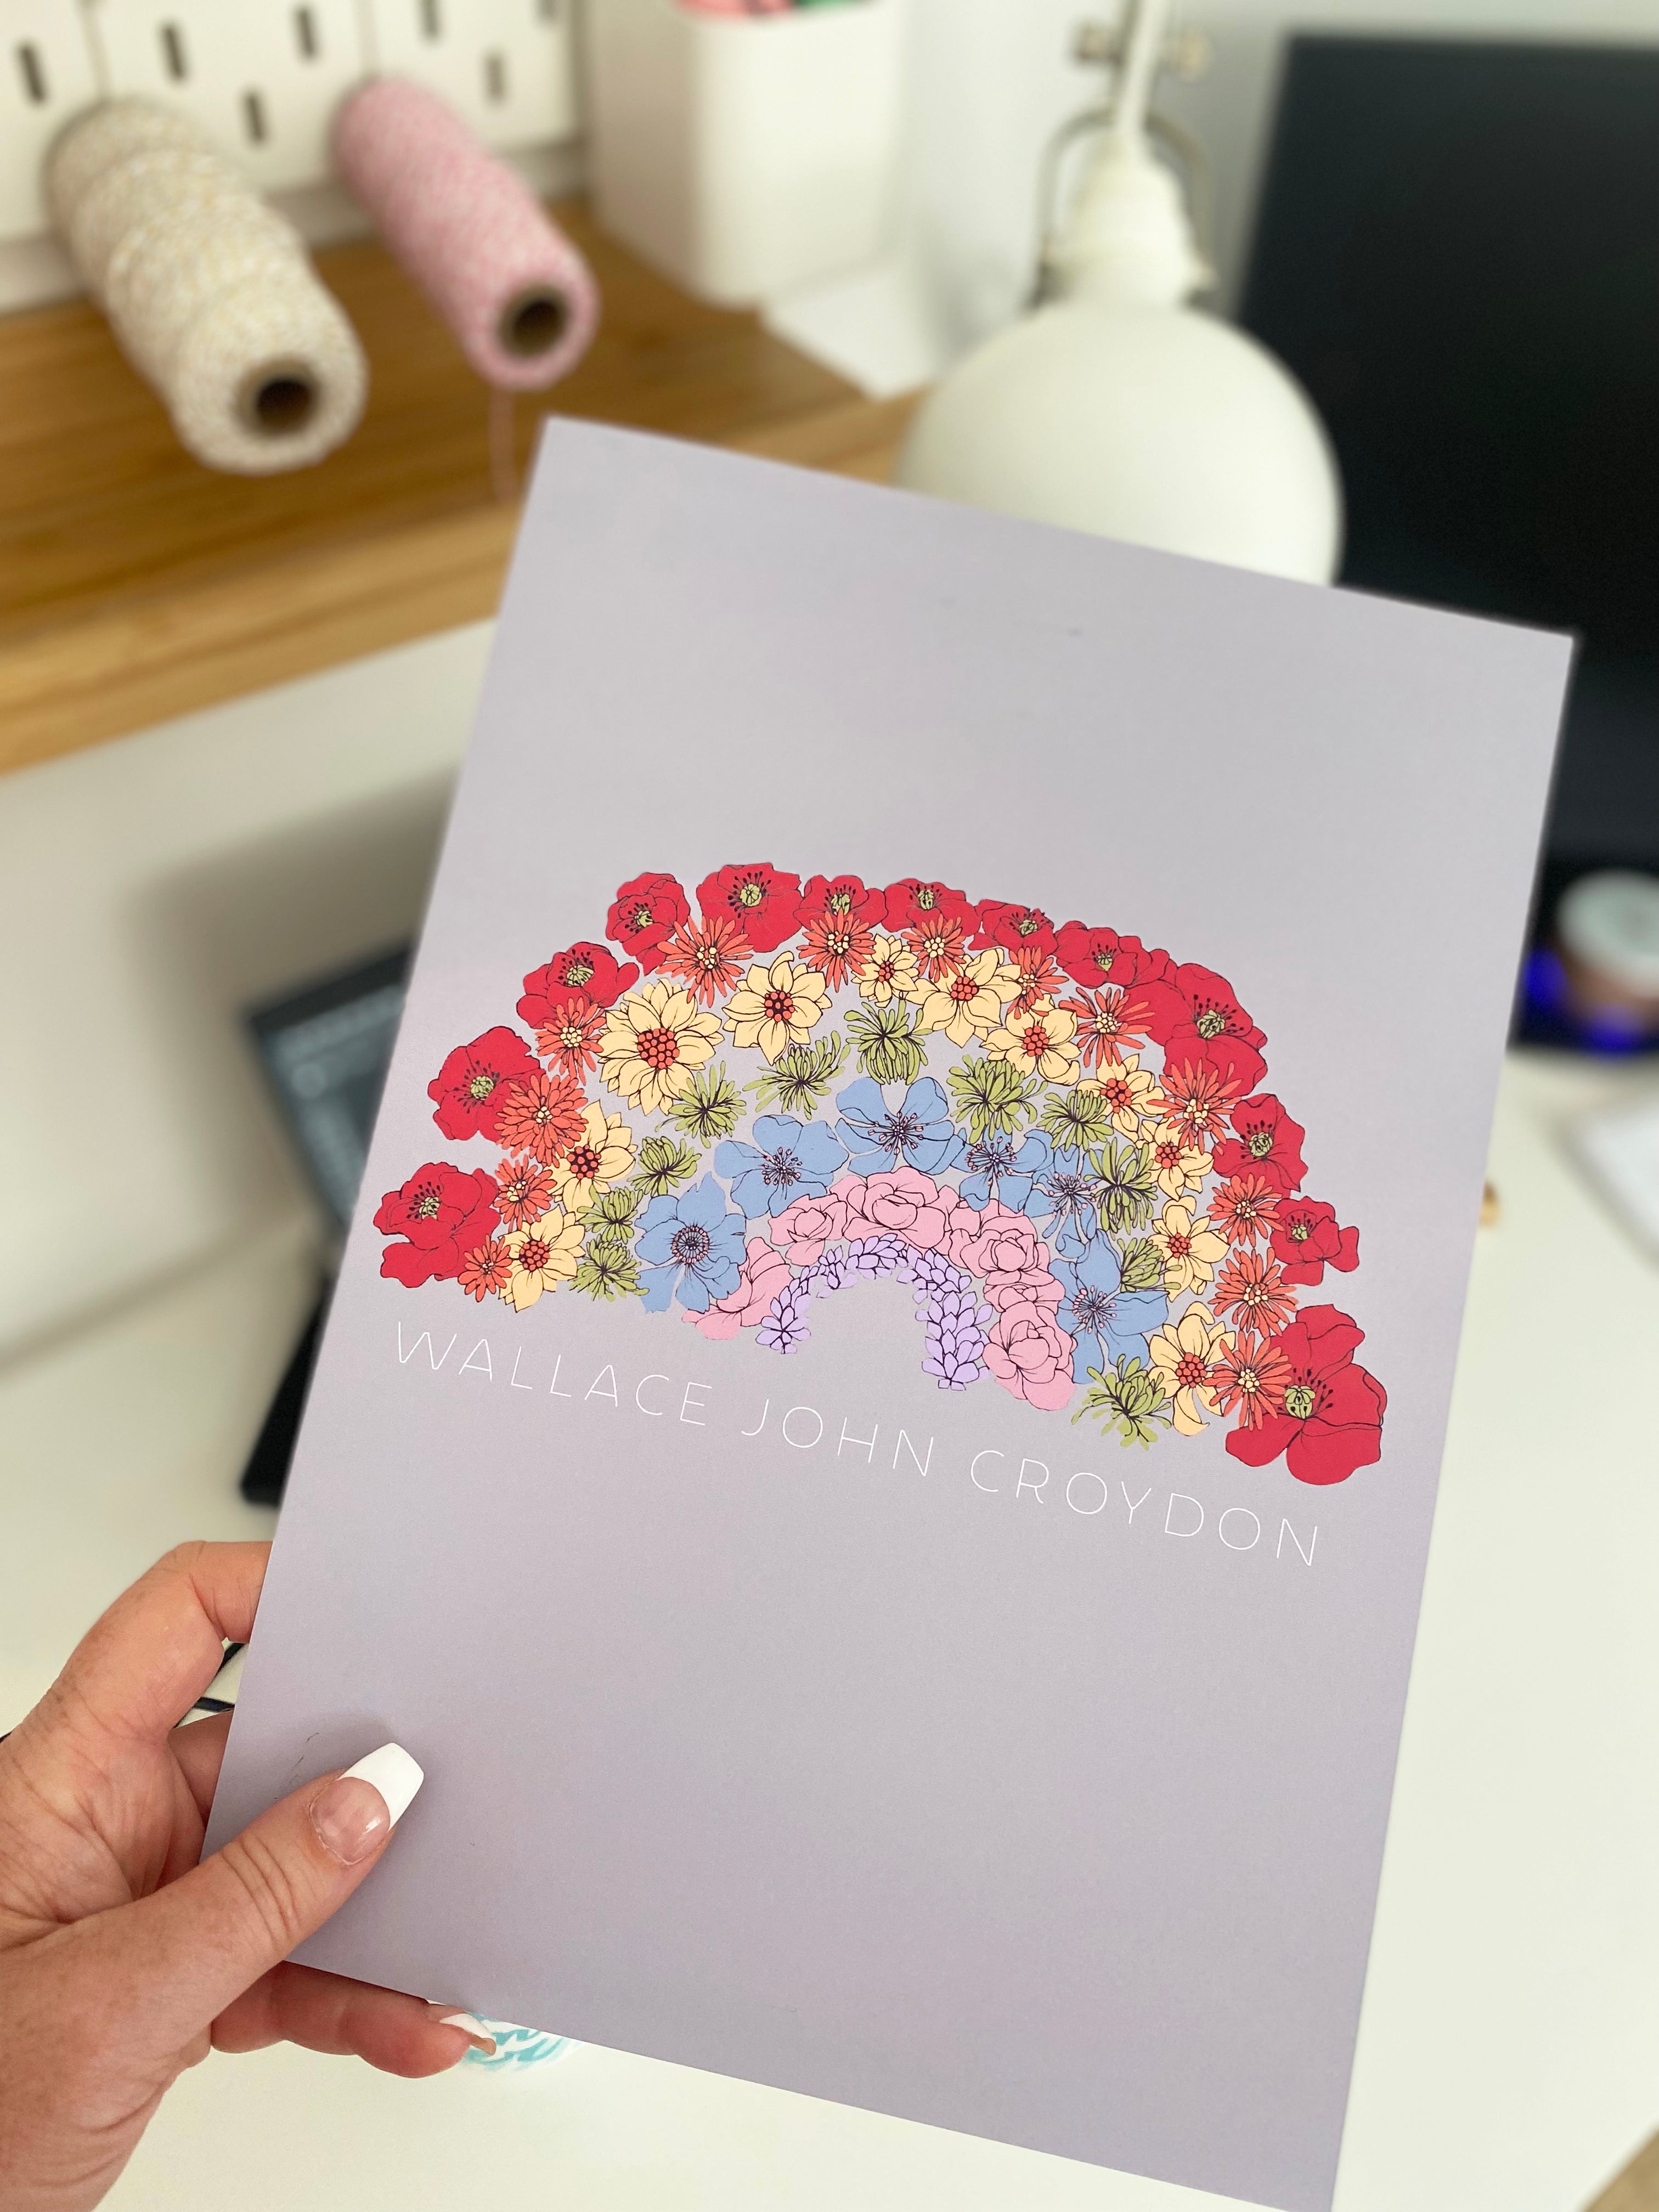 Rainbow flowers personalised print Grey